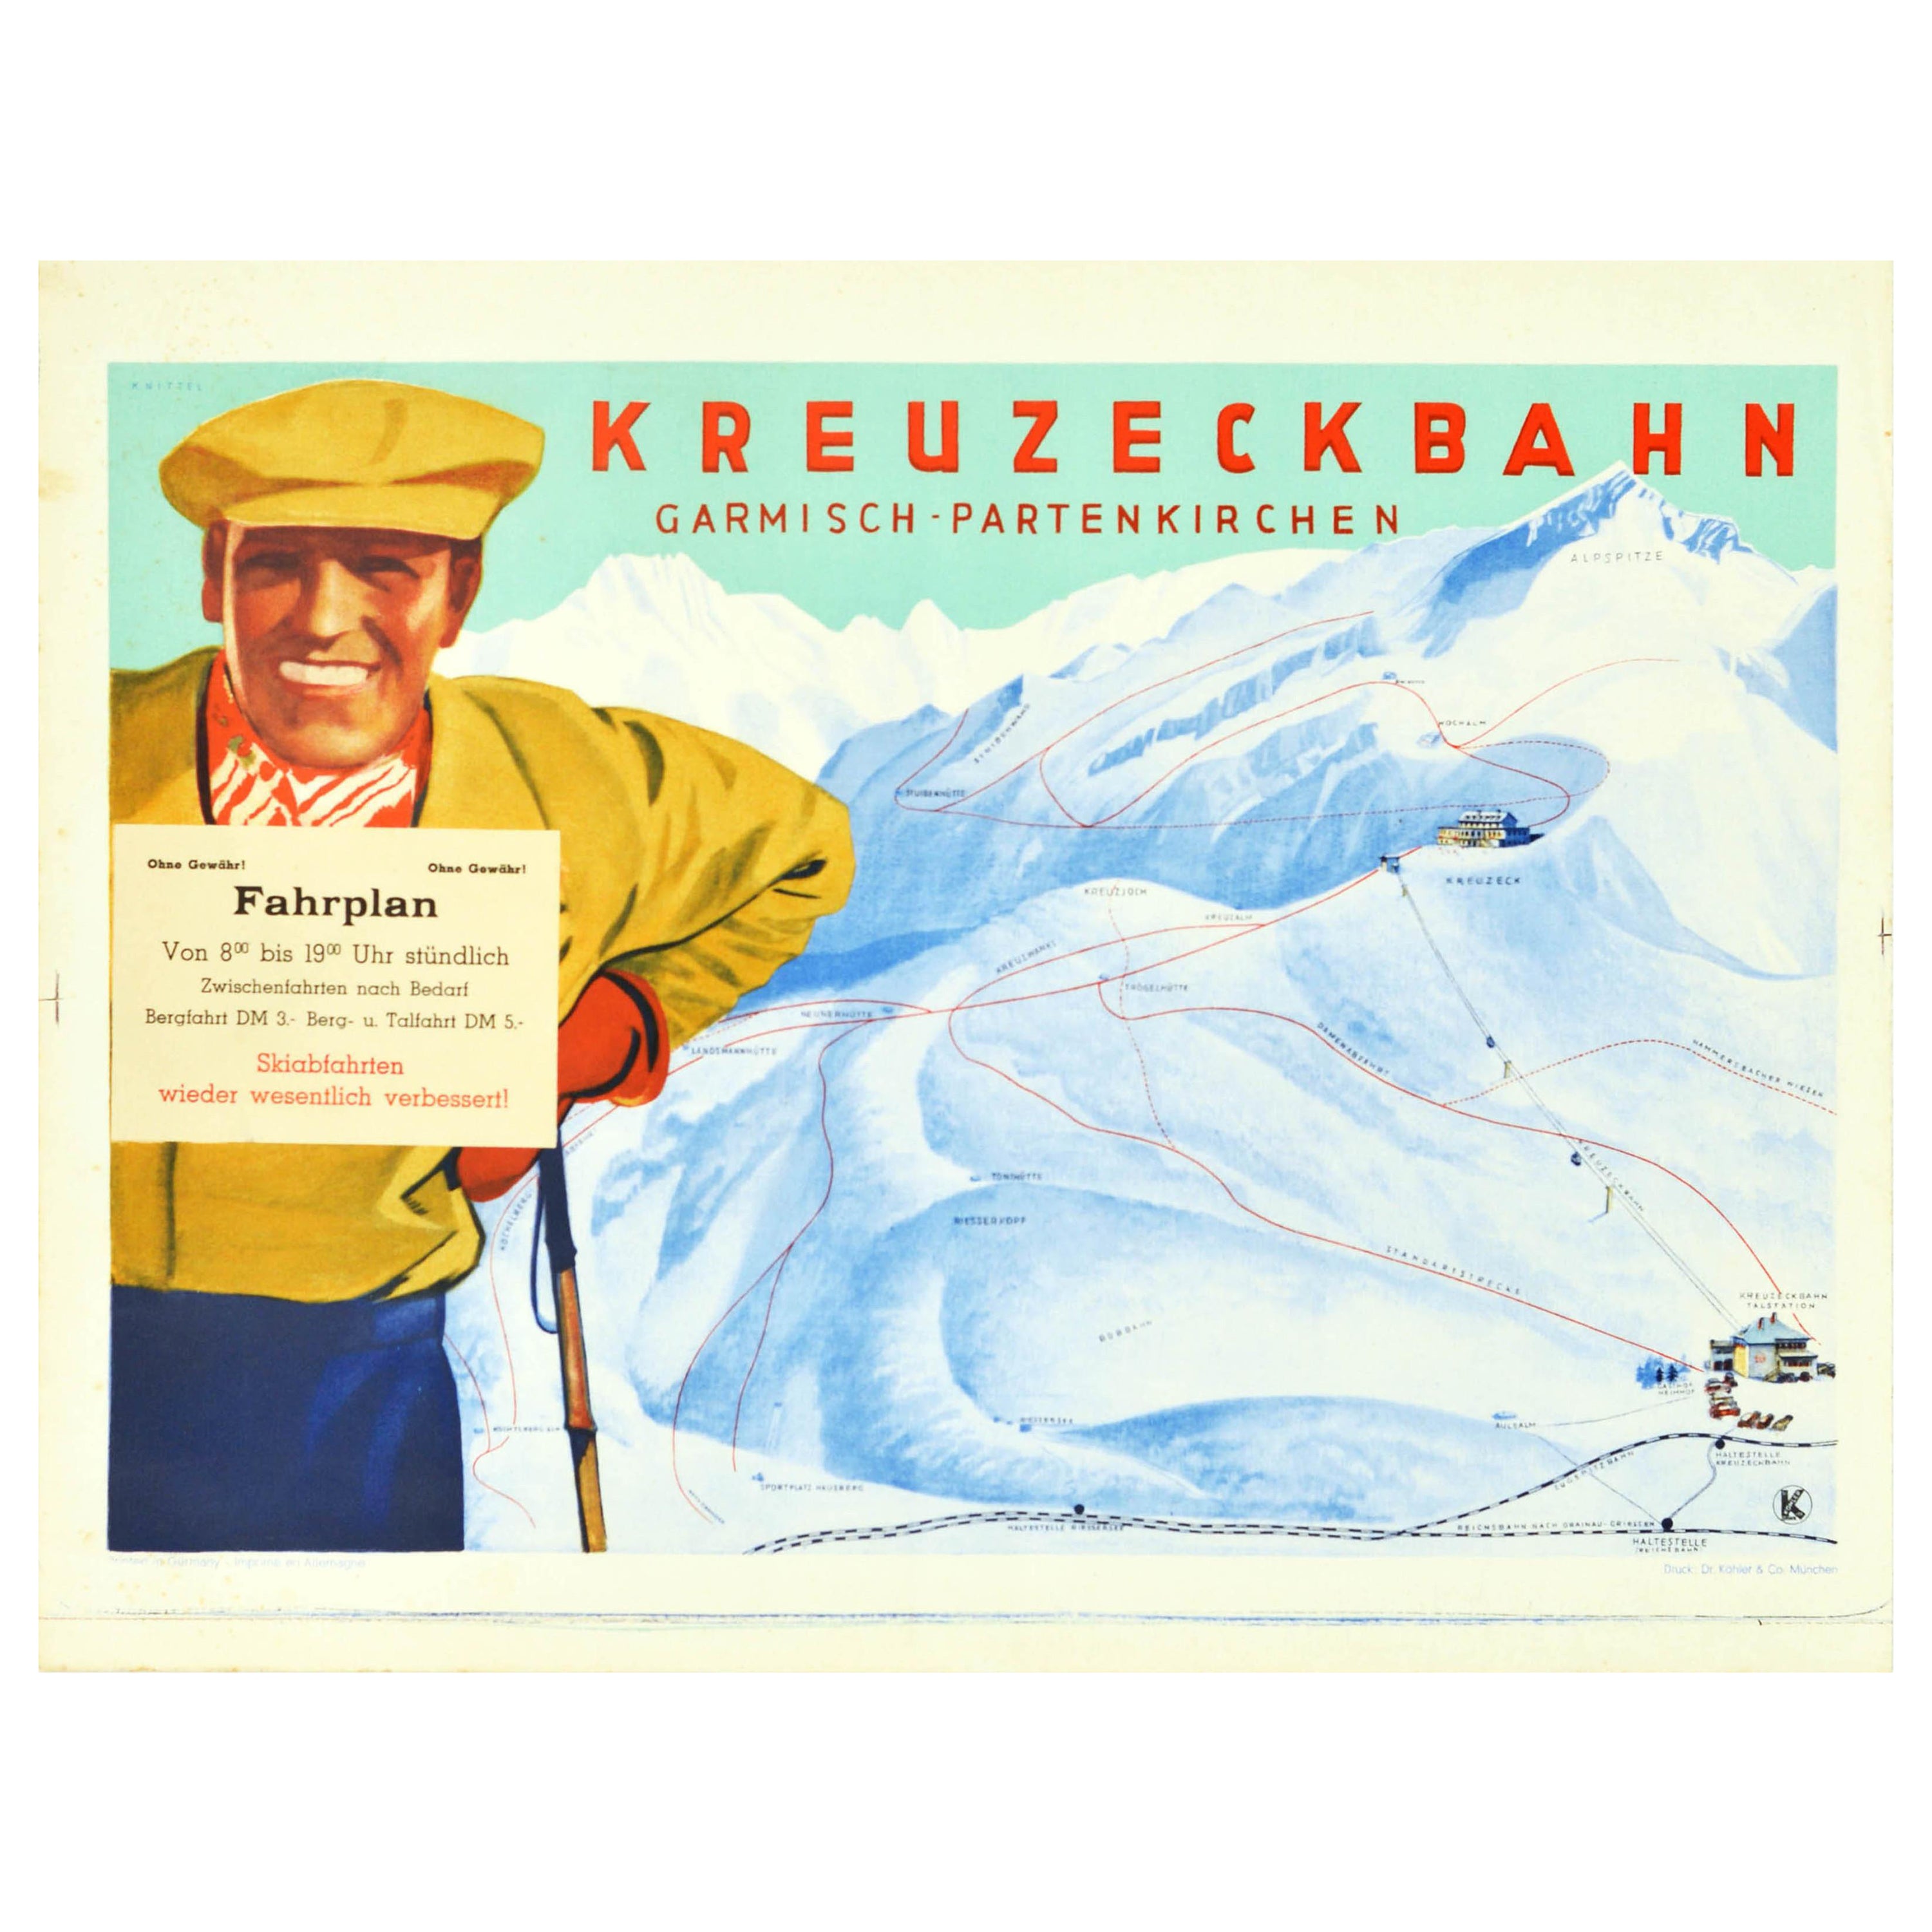 Original Vintage Poster Kreuzeck Bahn Garmisch Partenkirchen Skifahren Kabelwagen